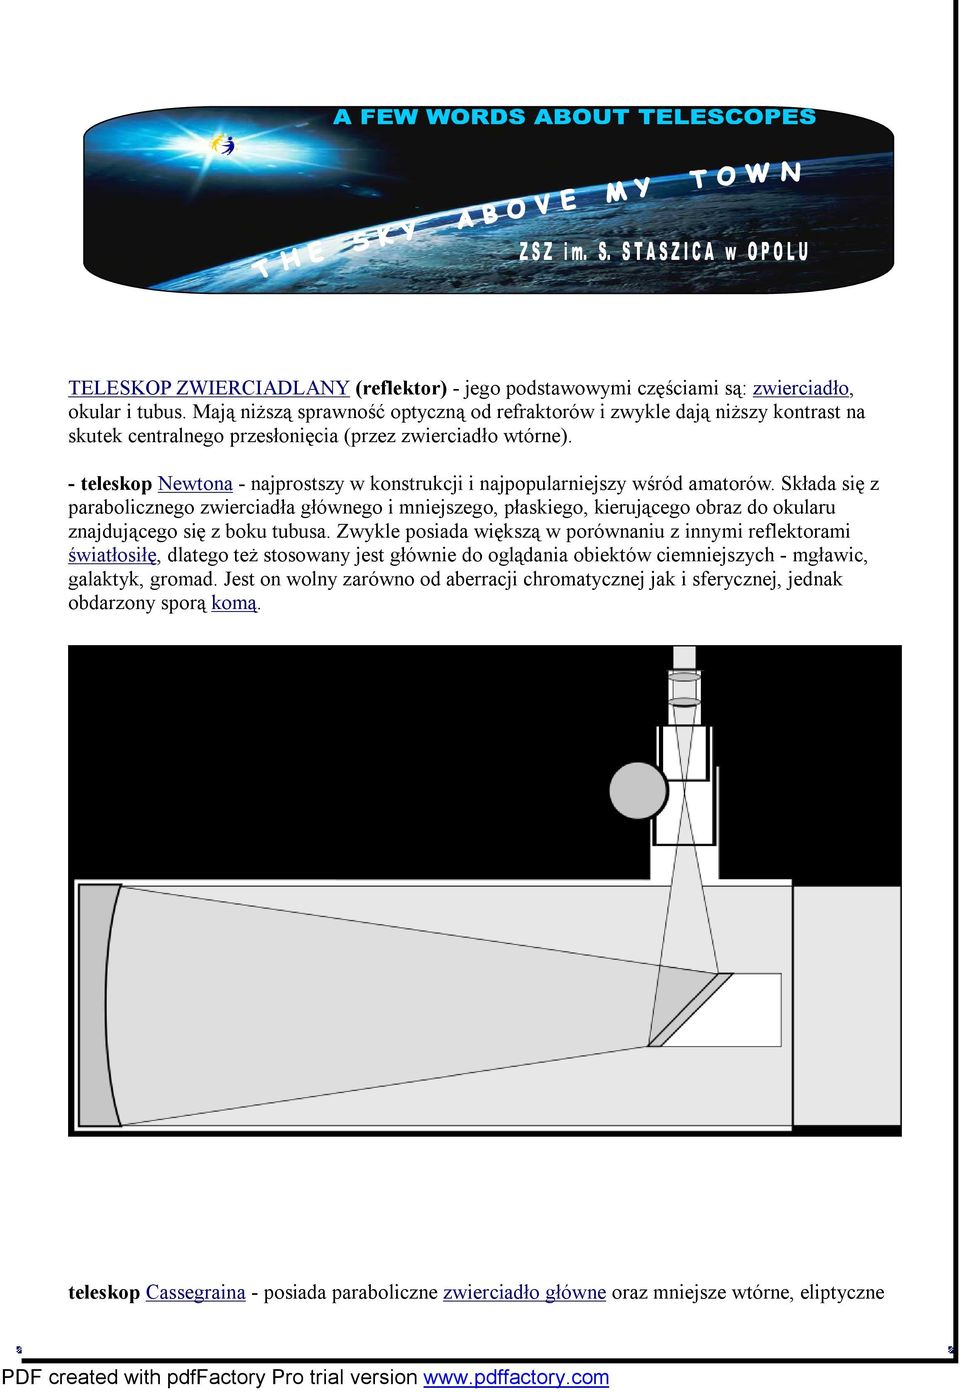 - teleskop Newtona - najprostszy w konstrukcji i najpopularniejszy wśród amatorów.